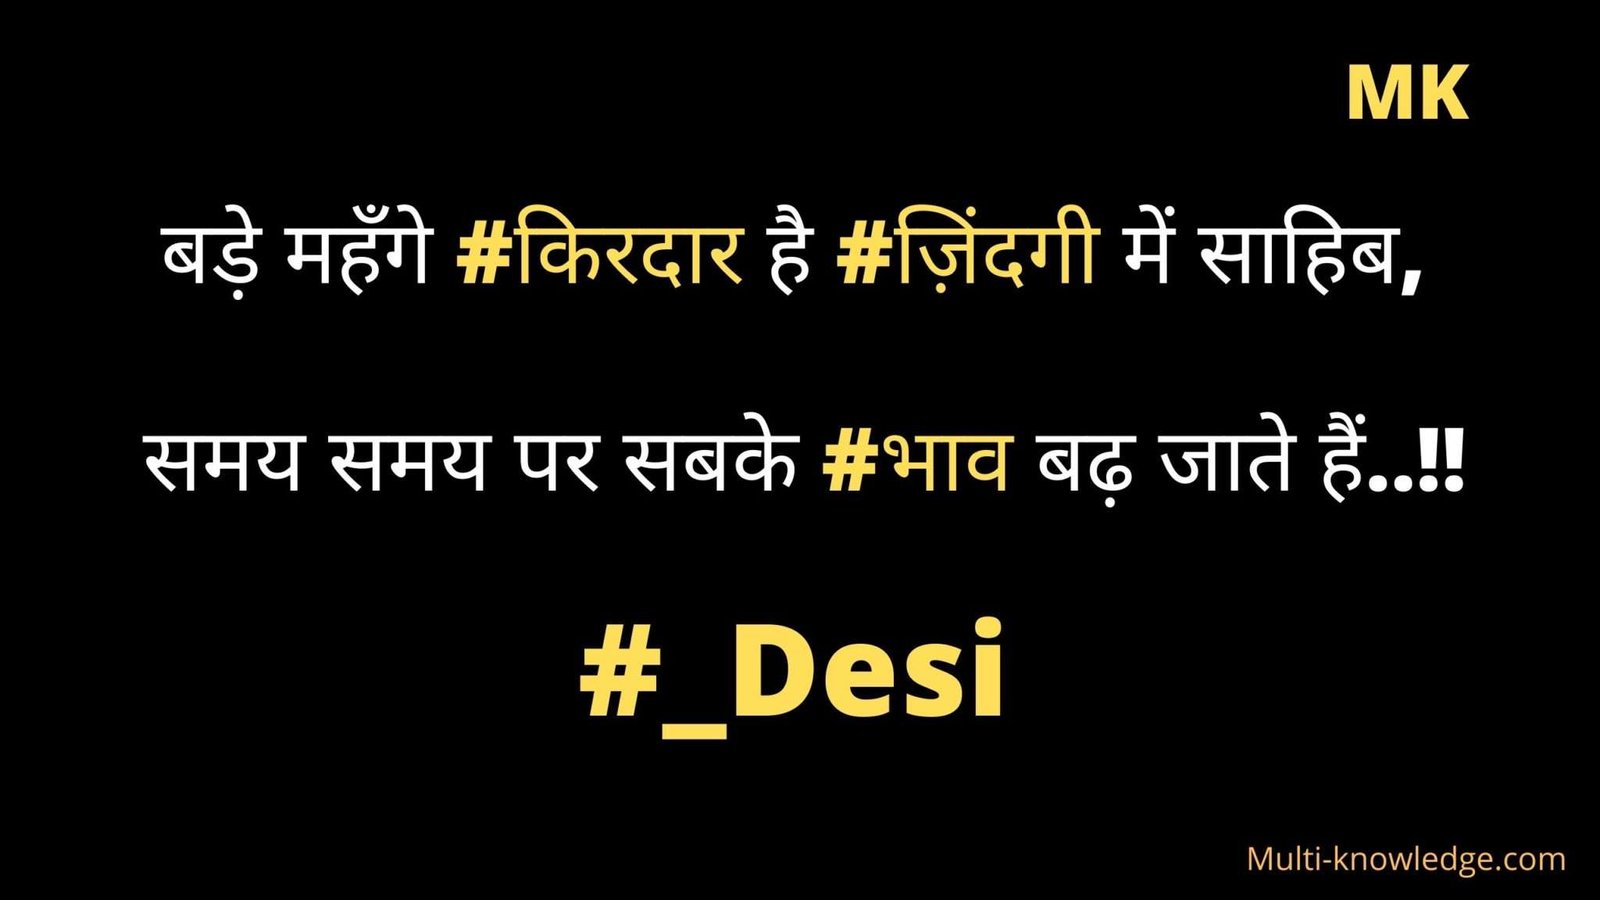 Desi Attitude status in Hindi by multi-knowledge.com